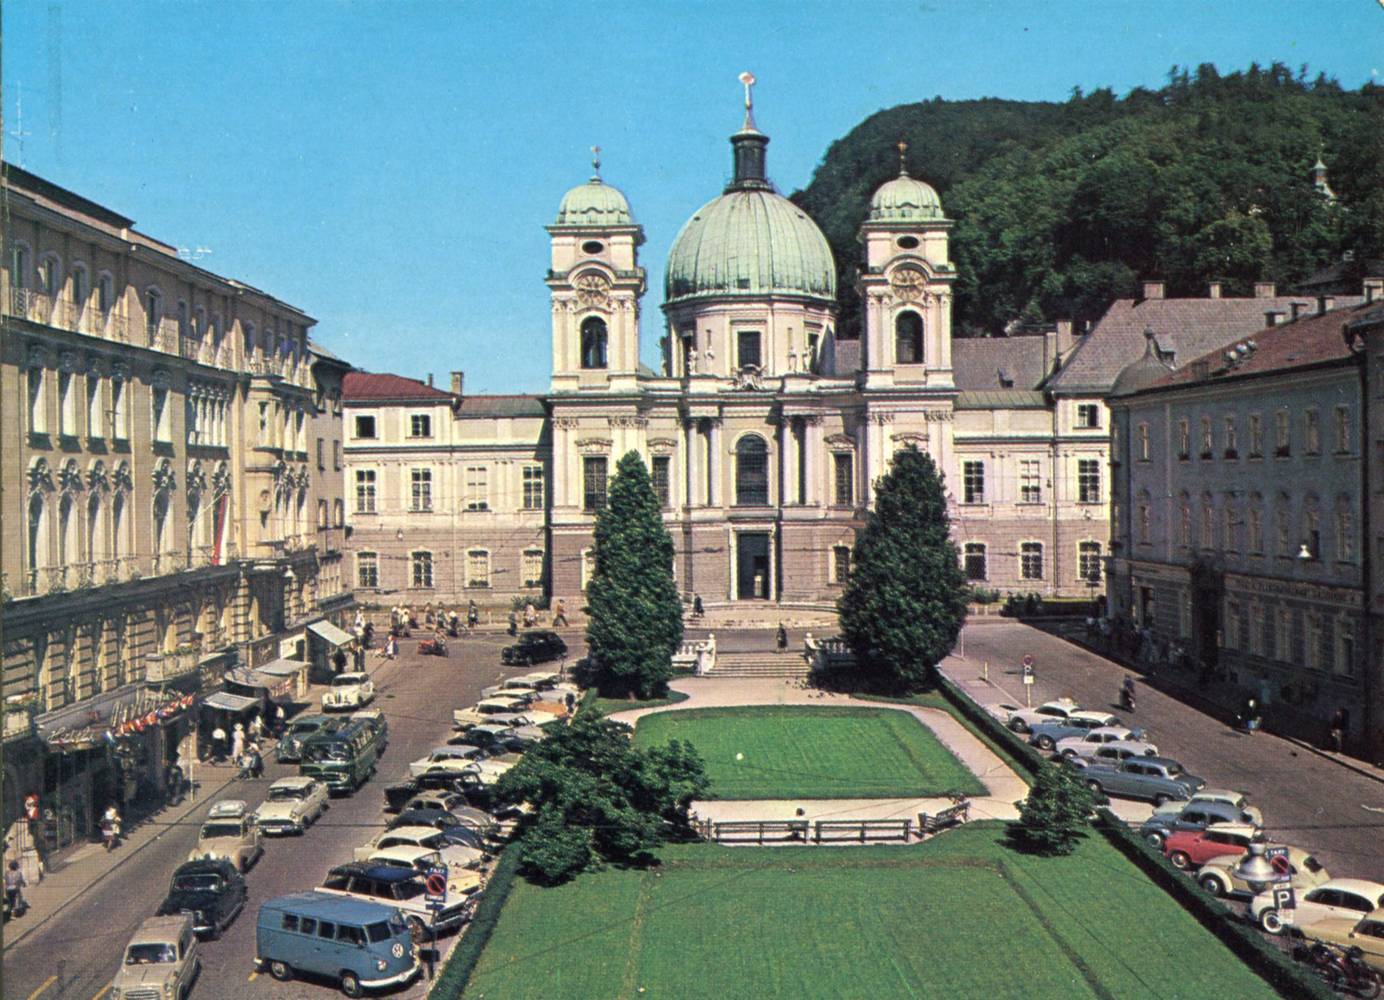 UNBEKANNT (Organisation), Die Dreifaltigkeitskirche am Makartplatz in Salzburg, Obushaltestelle, 1962 - 1964,  Inv.-Nr.Foto 41671